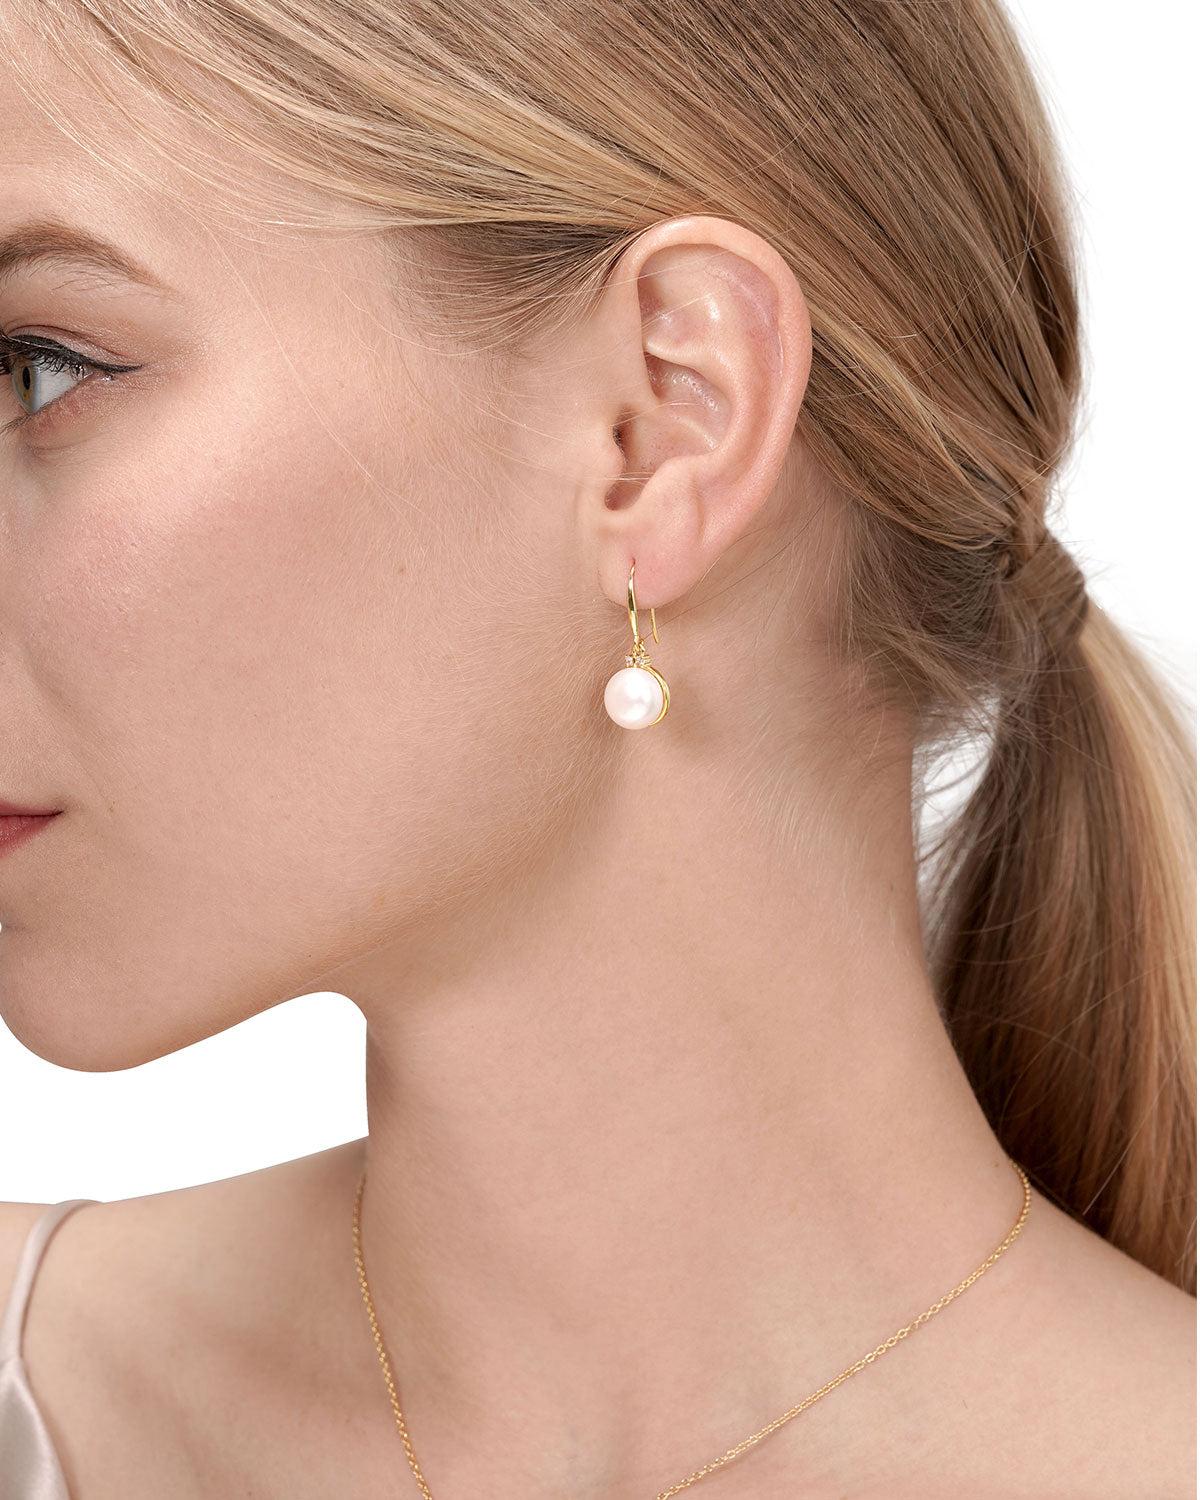 10-11mm Elegant White Freshwater Pearl Drop Earrings